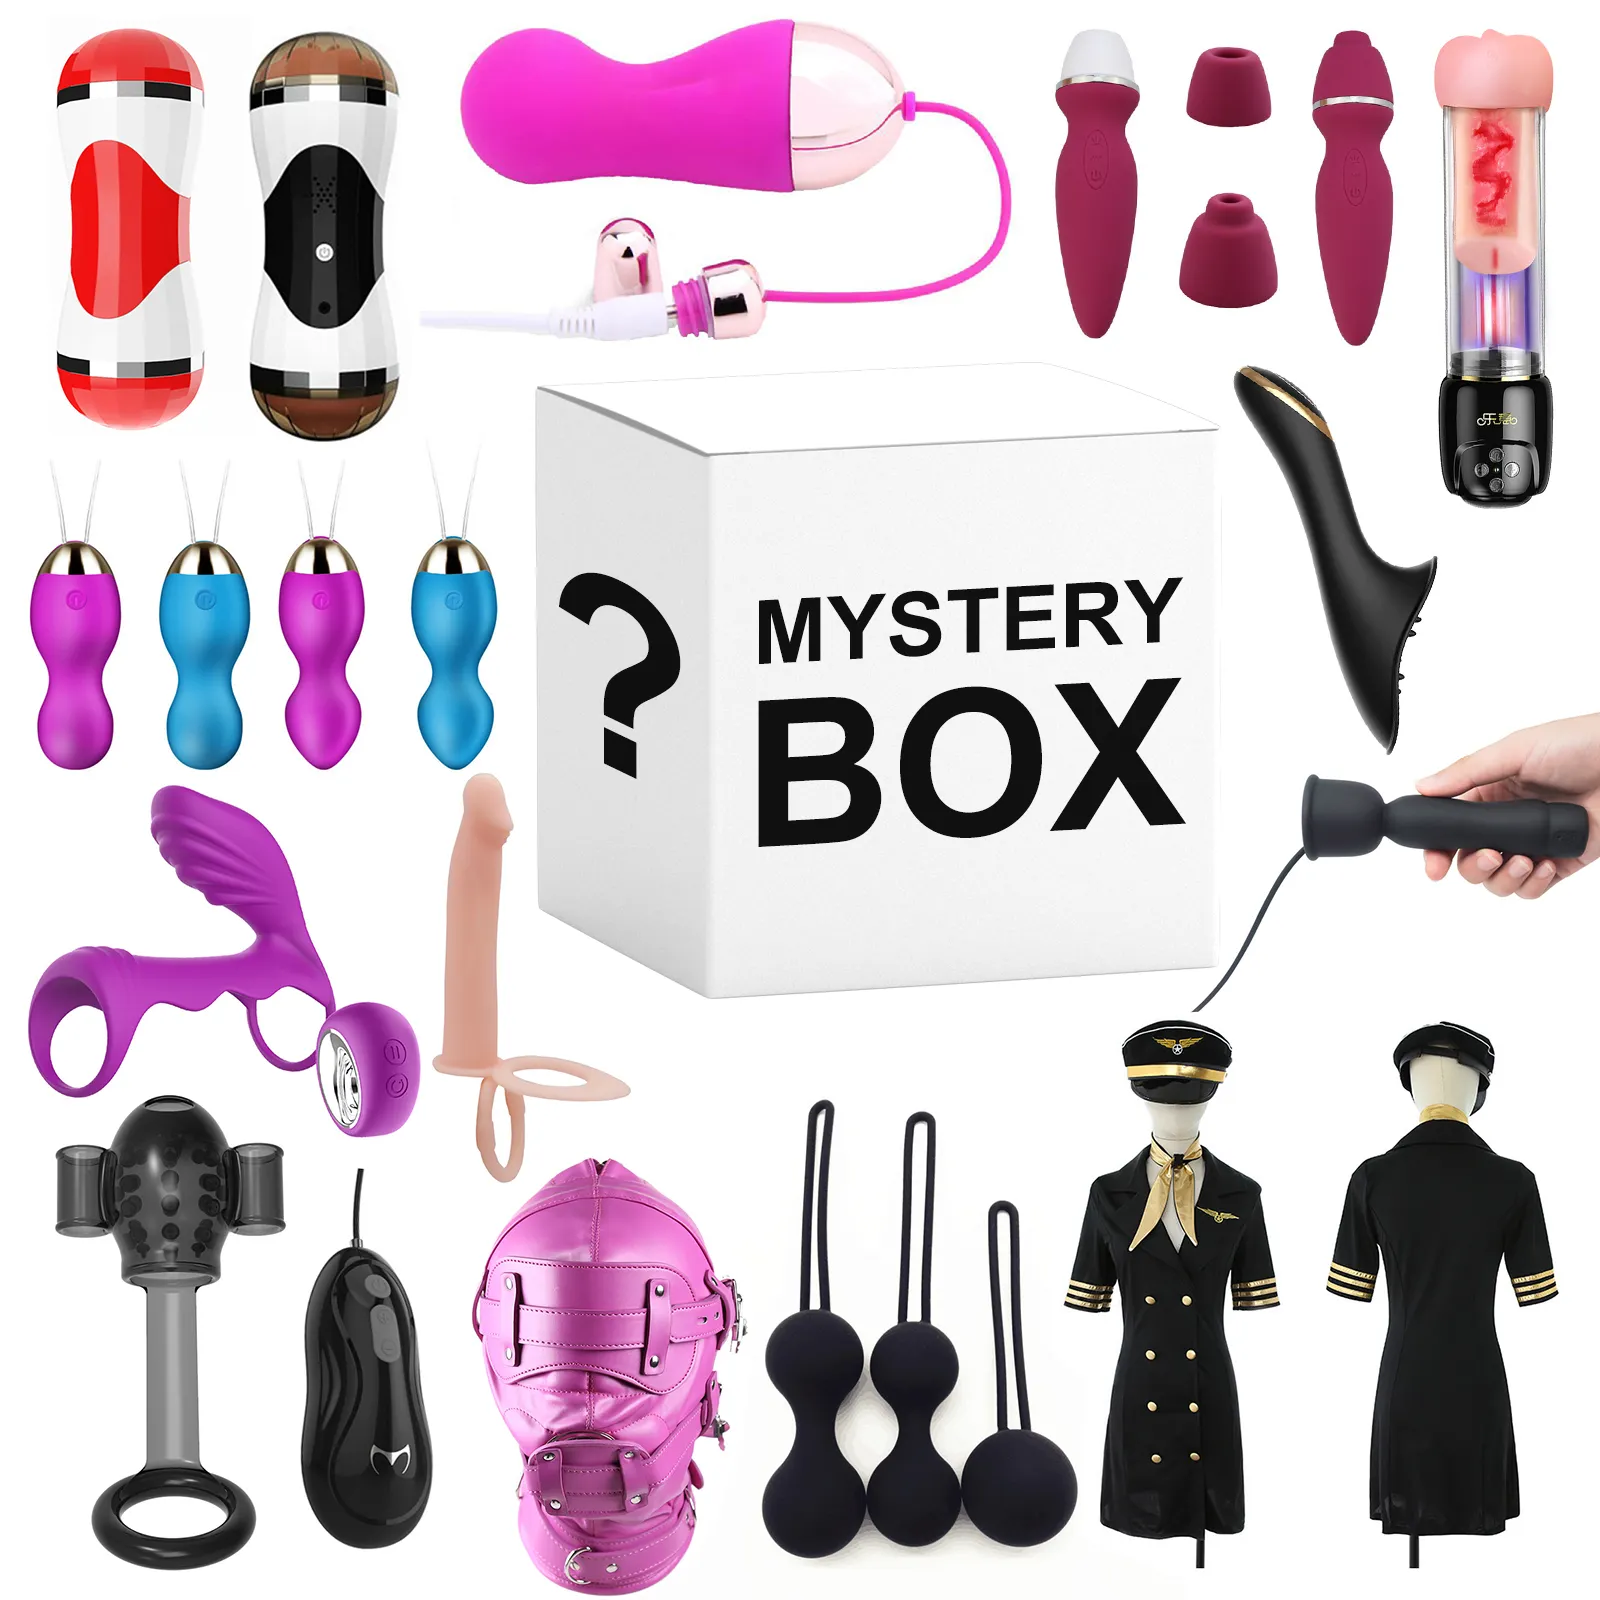 Caja misteriosa de la suerte para hombres y mujeres, Juguetes sexuales para adultos, vibradores, tienda de sexo, caja misteriosa